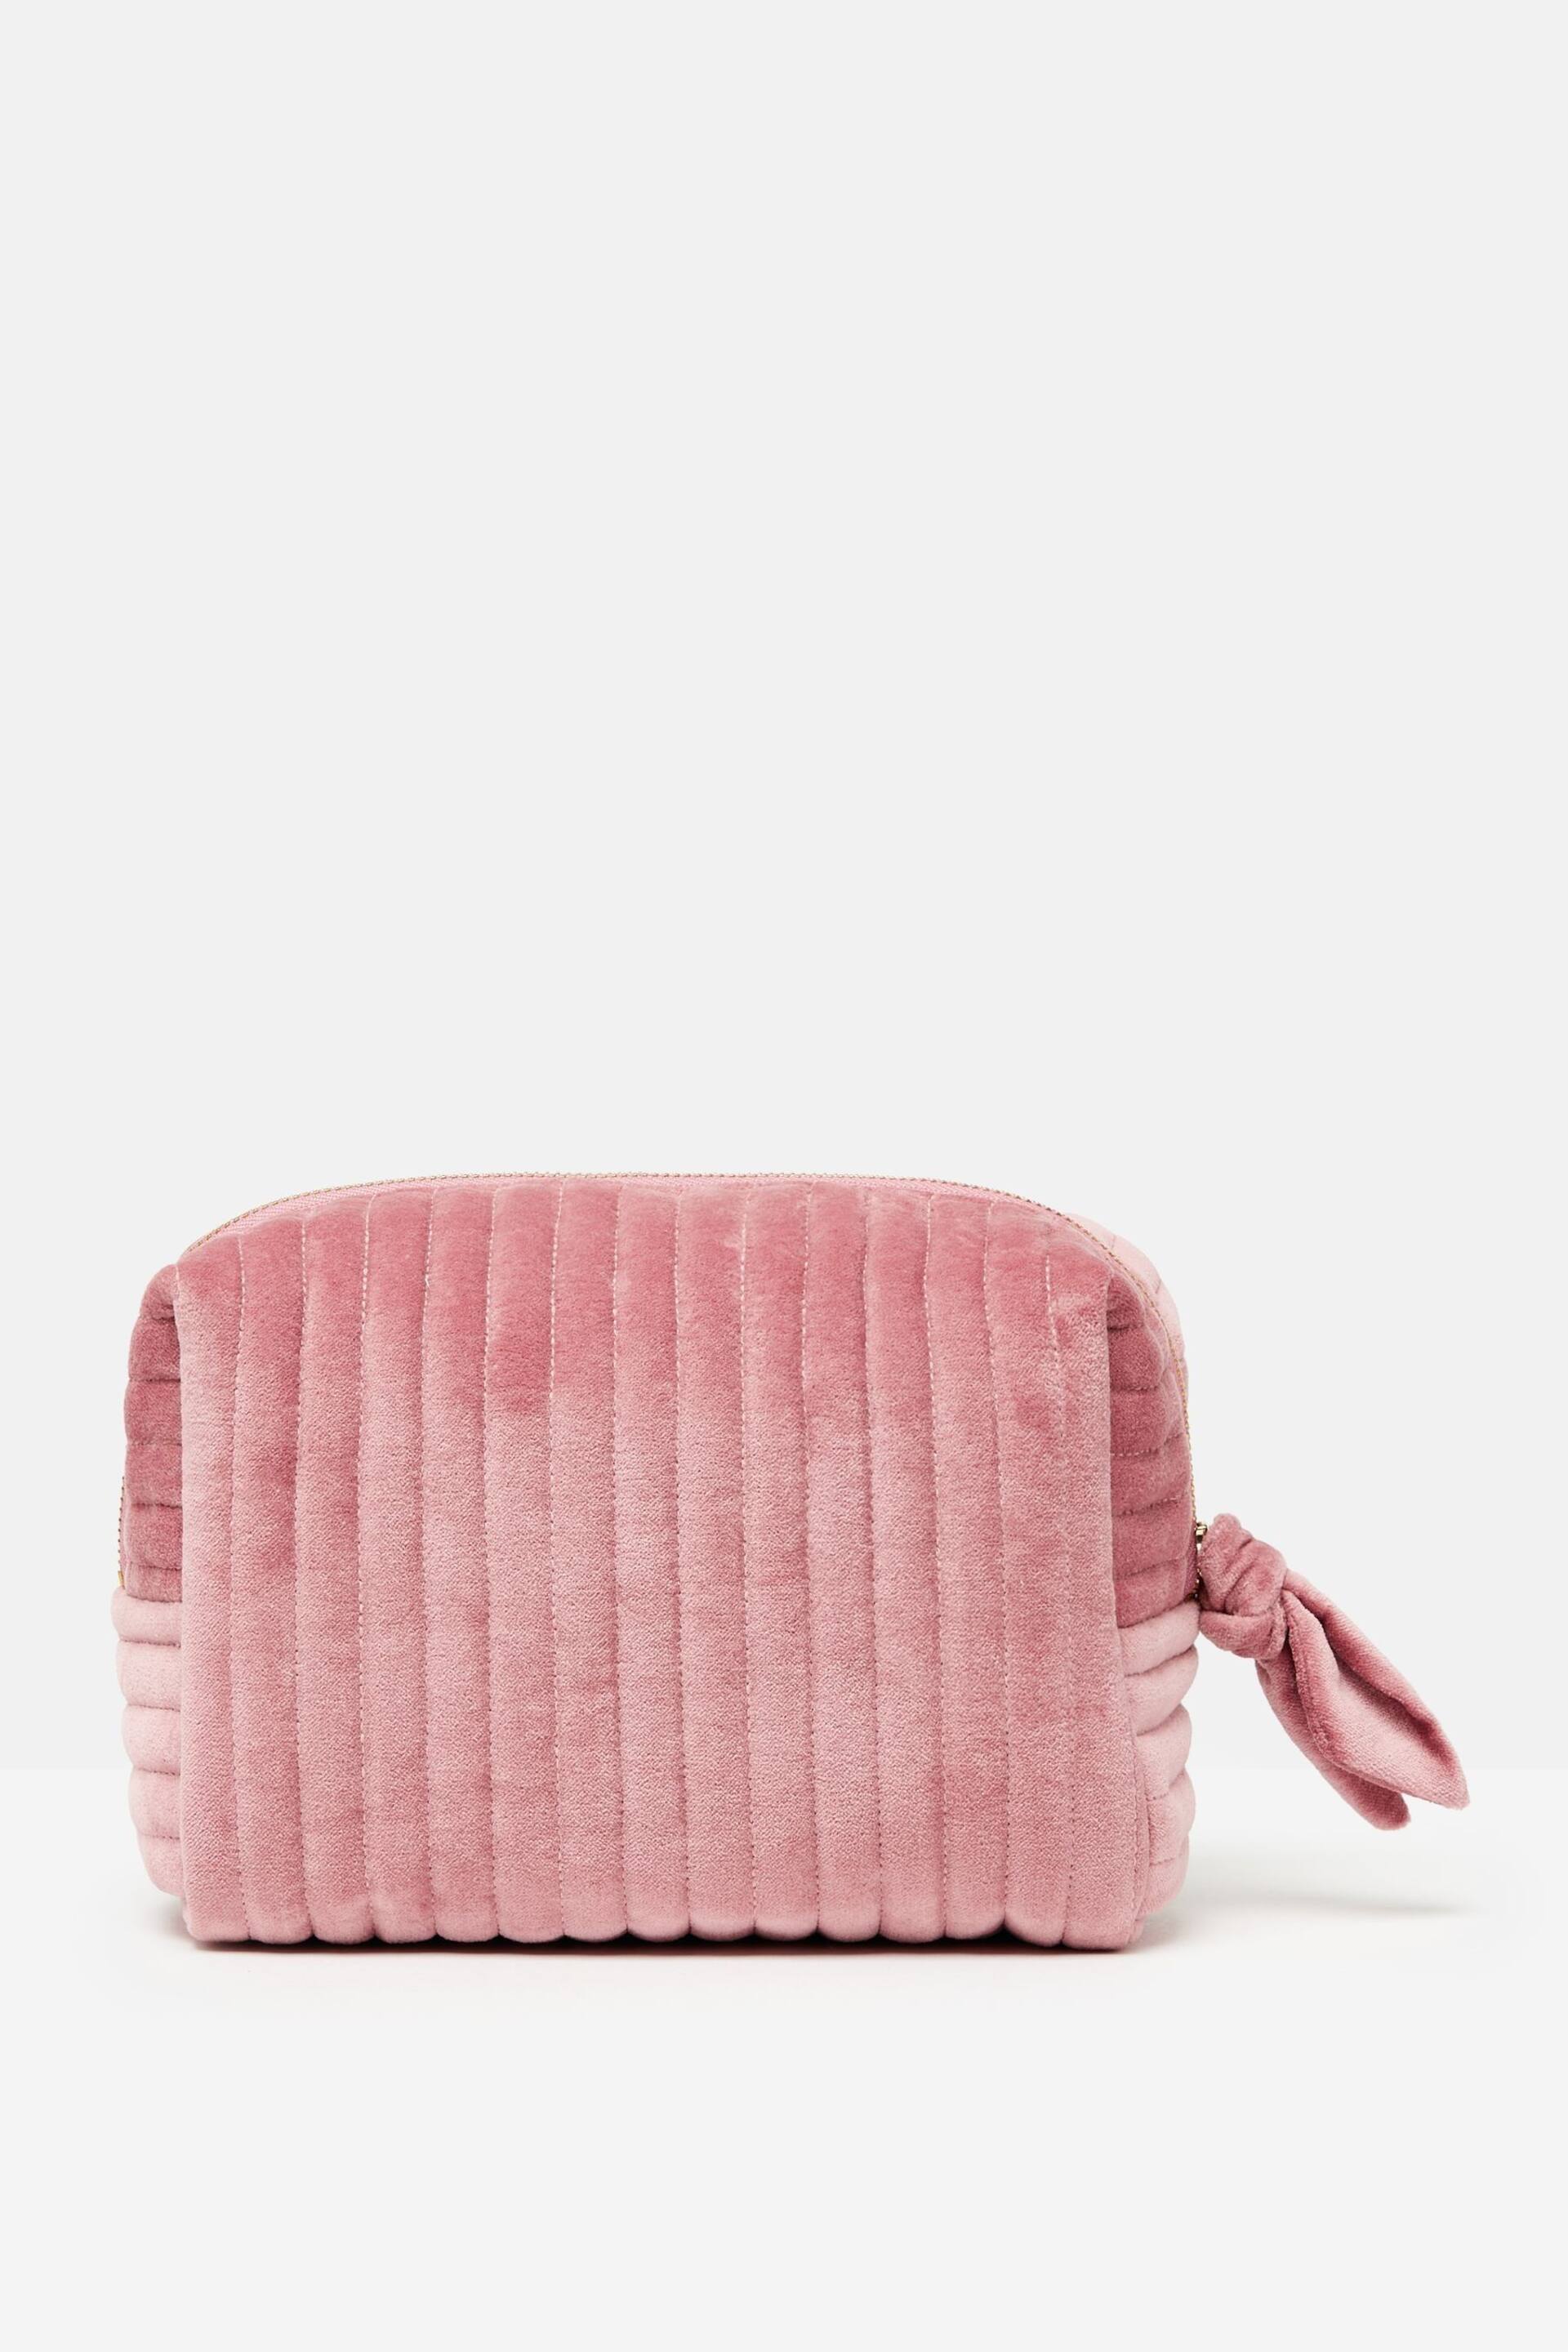 Joules Lillia Rose Pink Velvet Wash Bag - Image 3 of 6